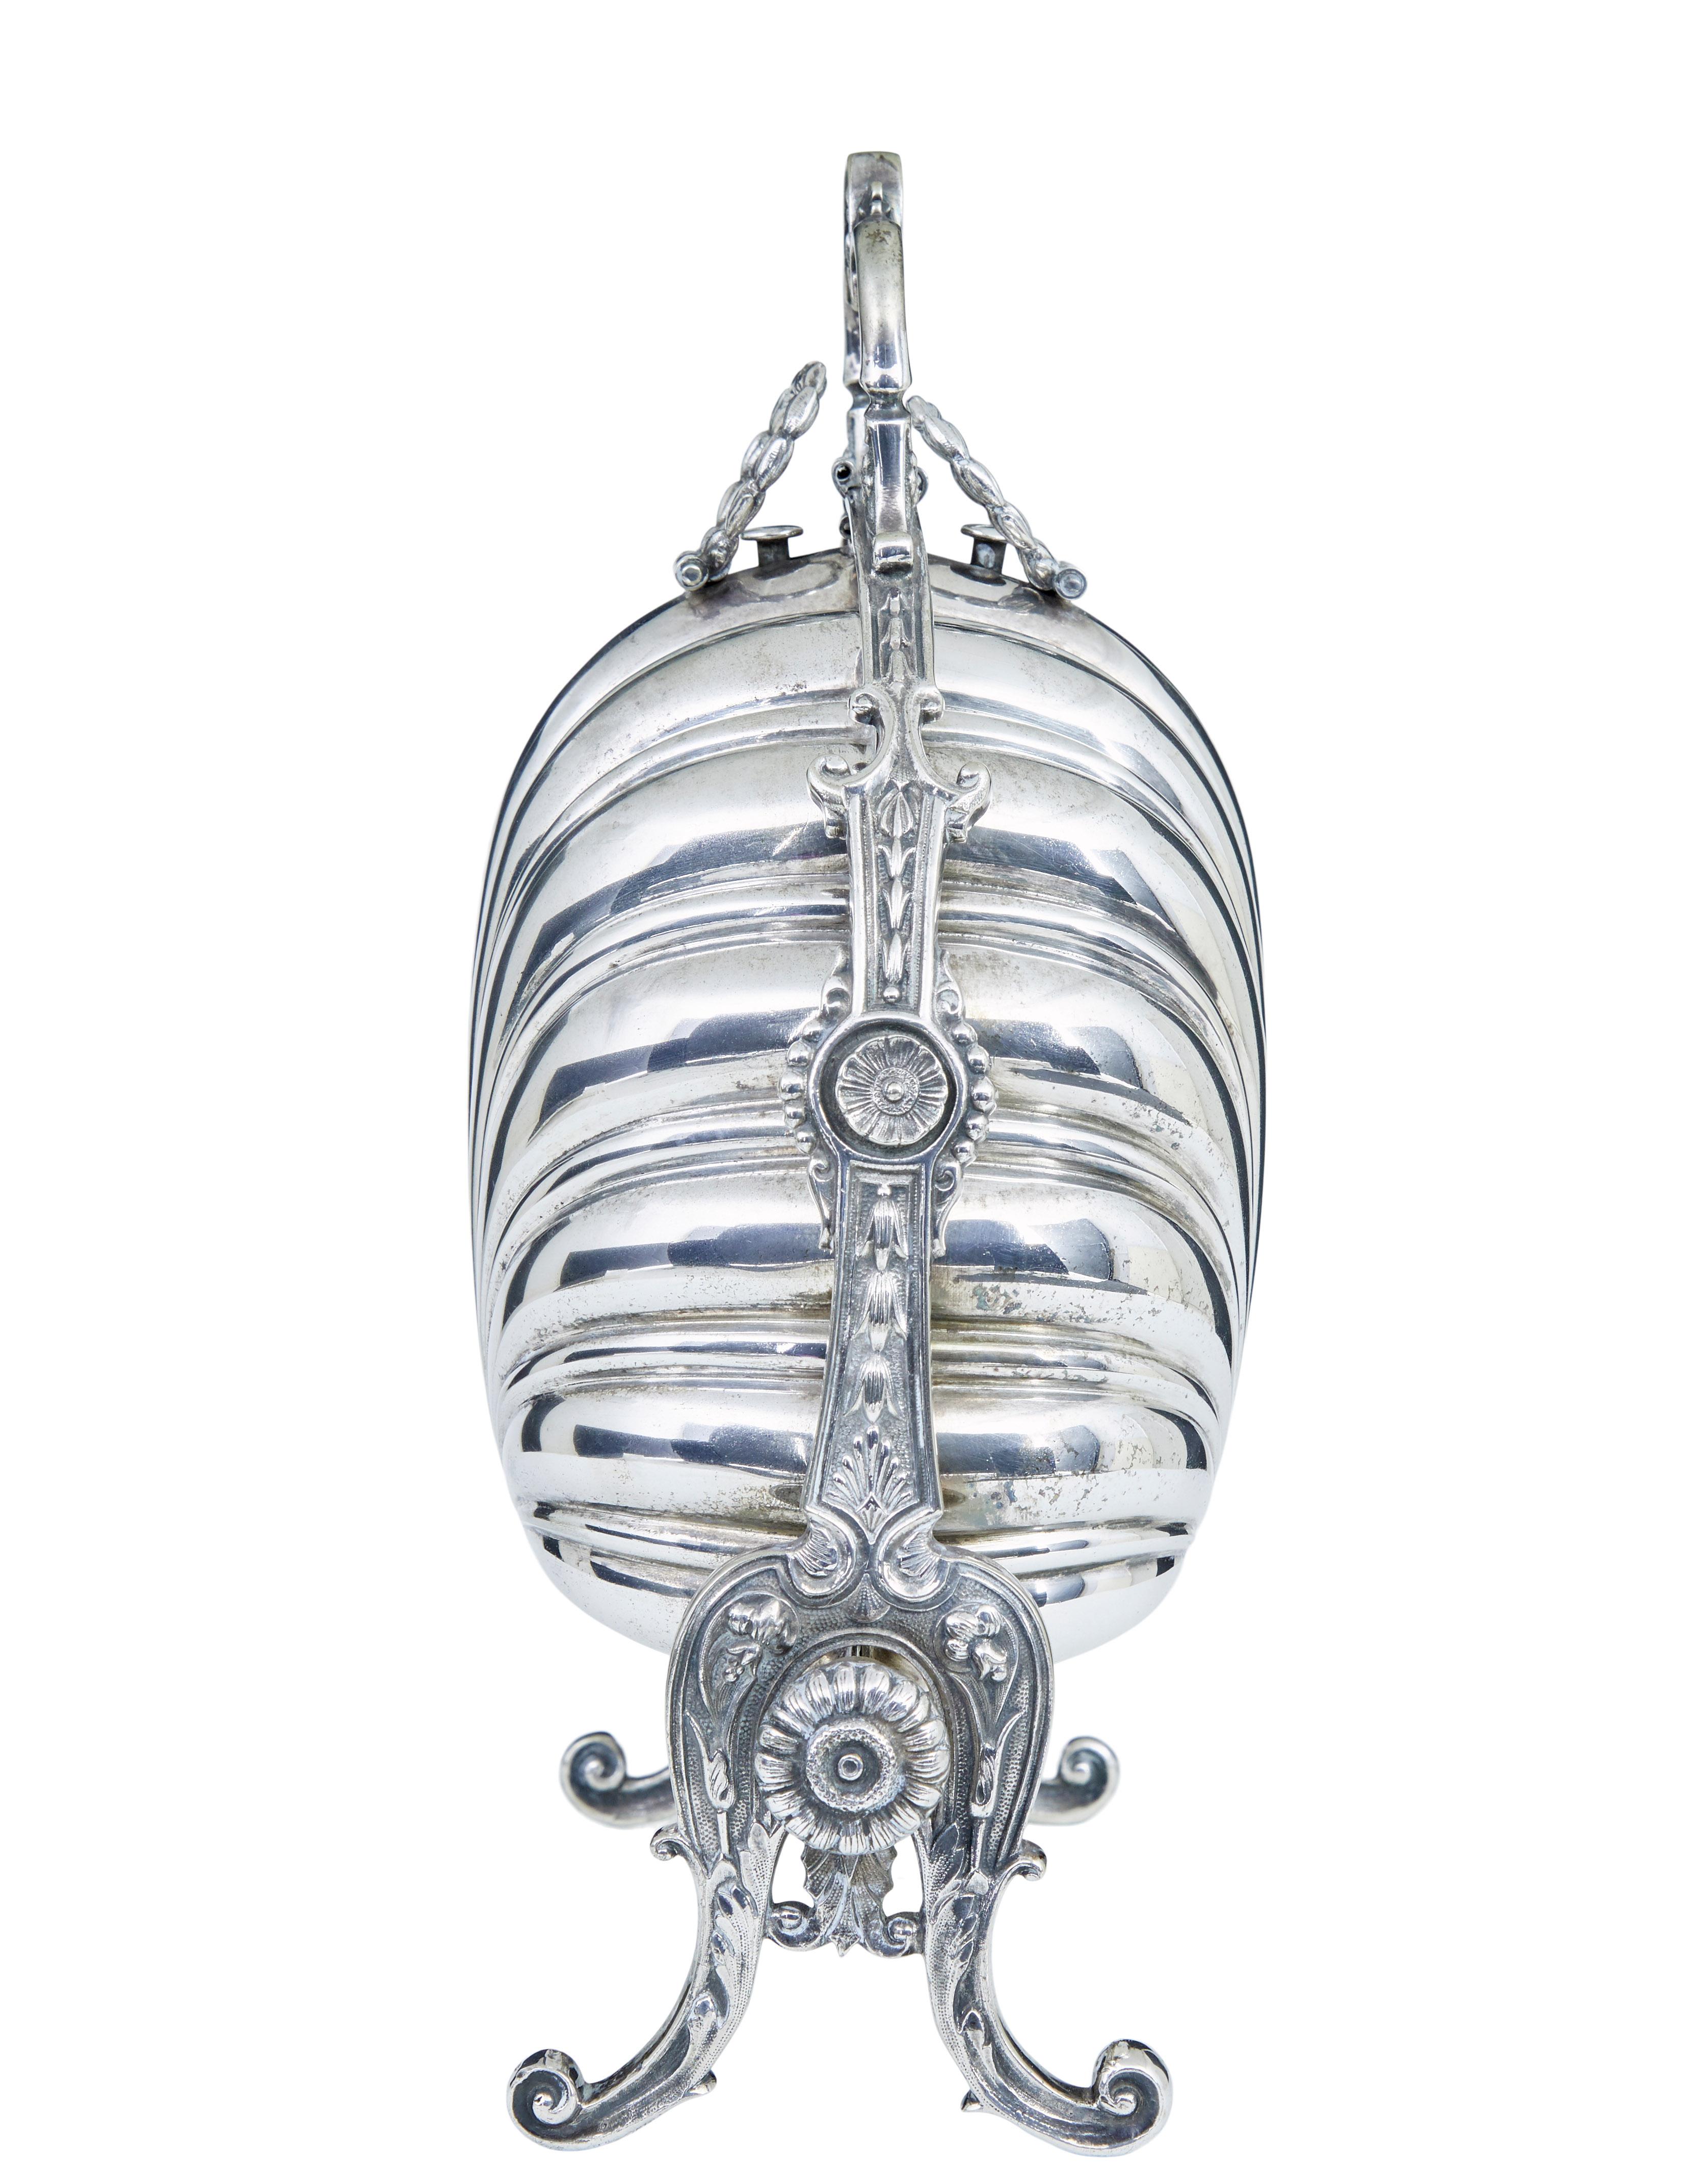 Chauffe-brioche décoratif en métal argenté du 19e siècle, vers 1890.

Nous avons vu de nombreuses descriptions et utilisations de cette pièce de vaisselle de la fin de l'époque victorienne.

Rouleau décoratif en forme de feston qui forme la poignée